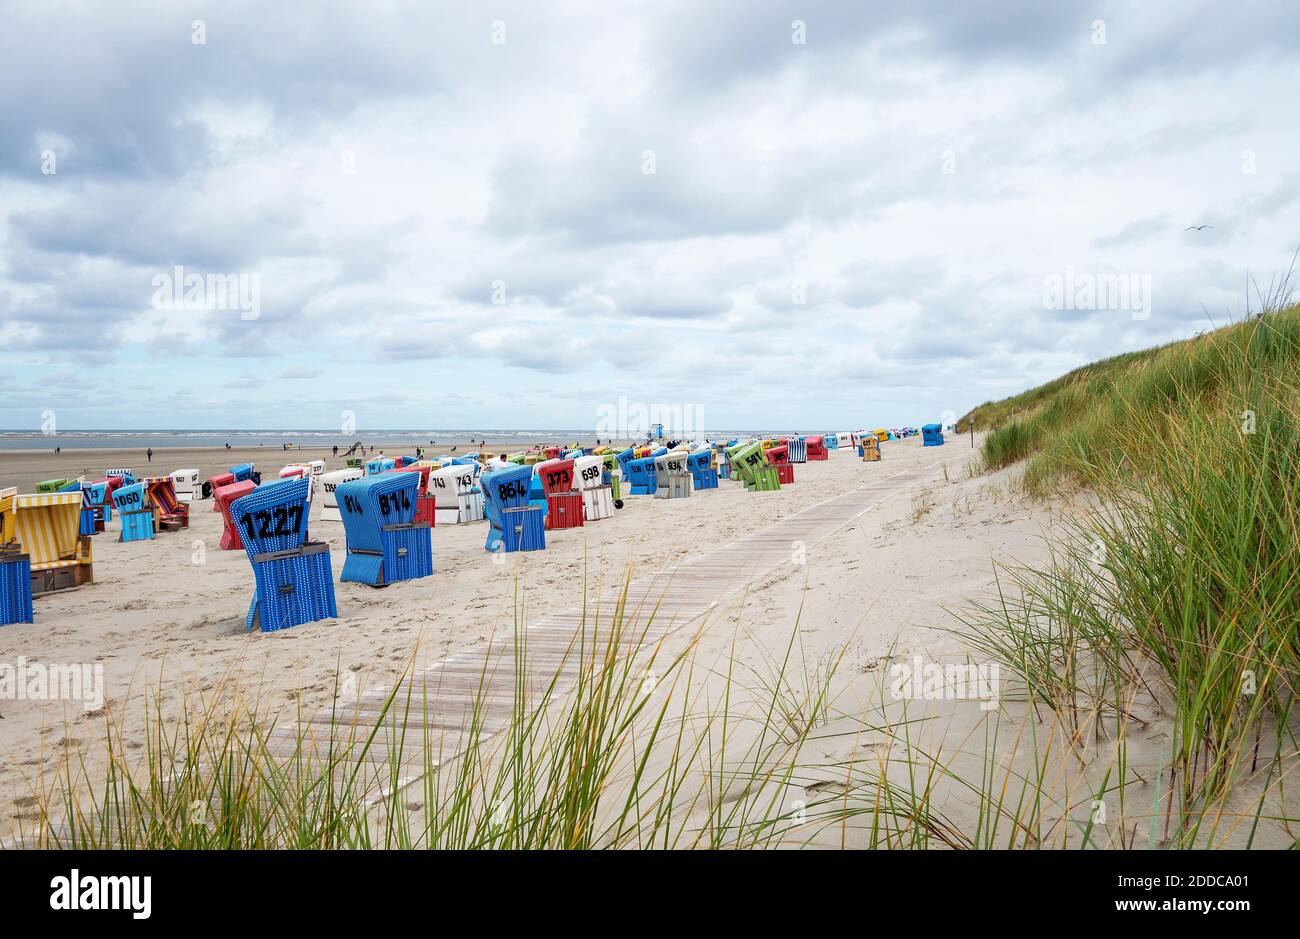 Sedie da spiaggia con cappuccio sulla spiaggia sabbiosa costiera dell'isola di Langeoog Foto Stock